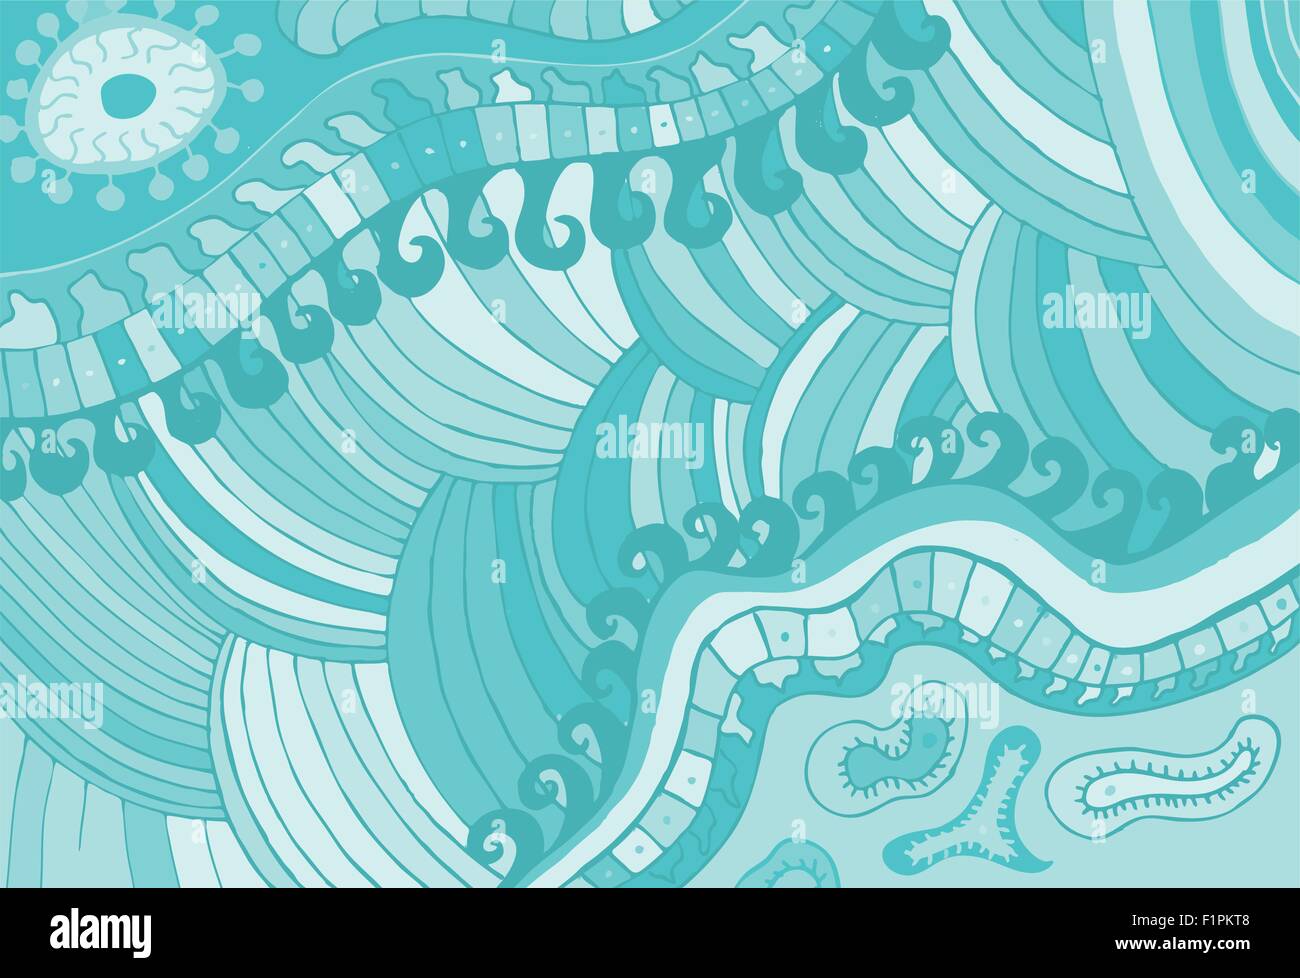 abstrakte Hand gezeichnete Blaue Wellen Muster Vektor-illustration Stock Vektor